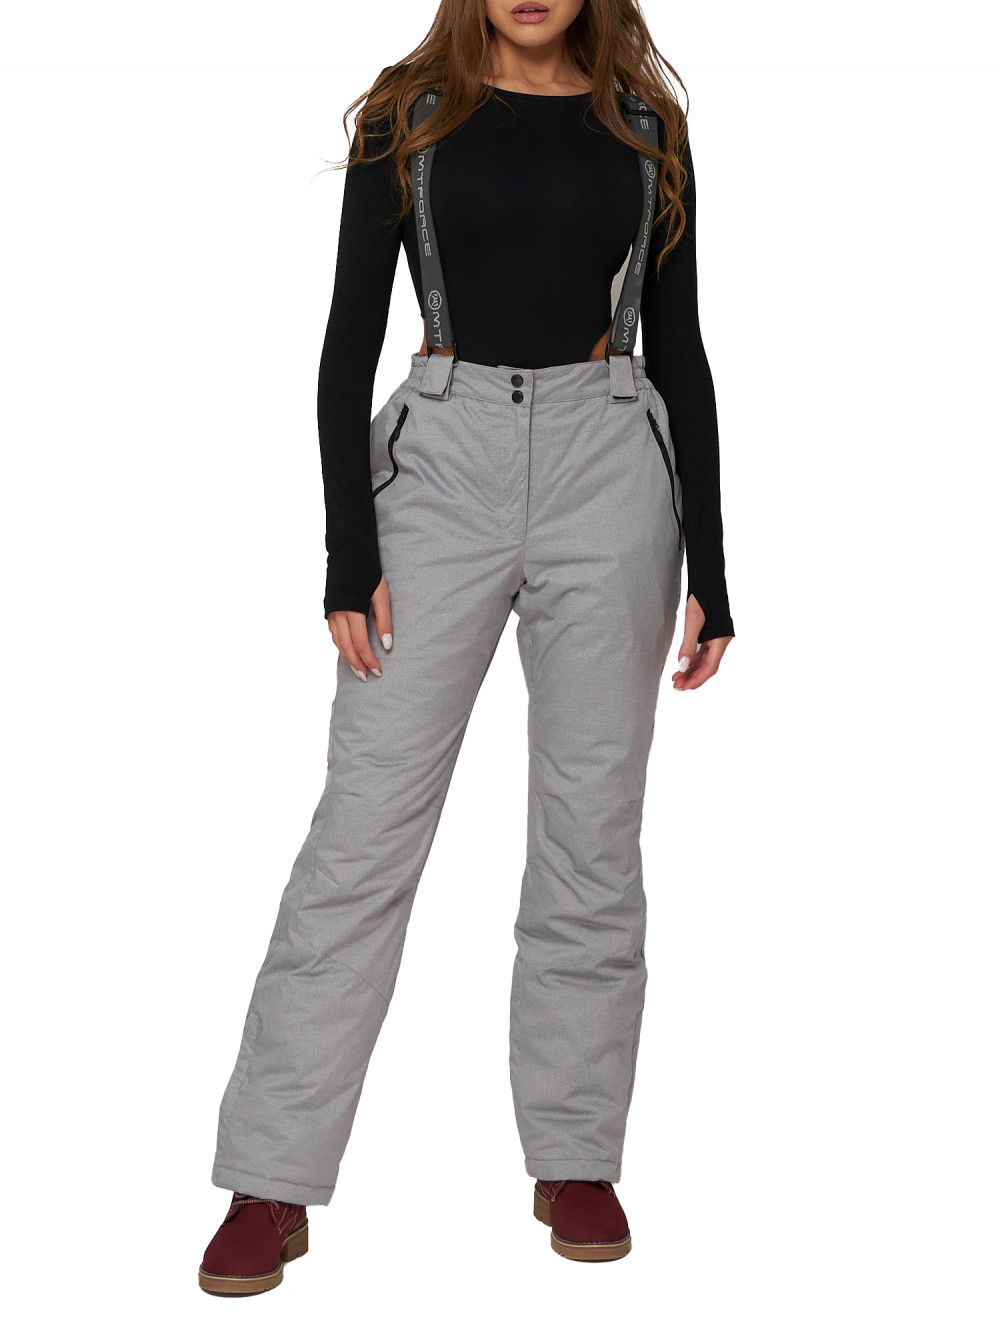 Полукомбинезон брюки горнолыжные женские AD2221Sr серого цвета, 44